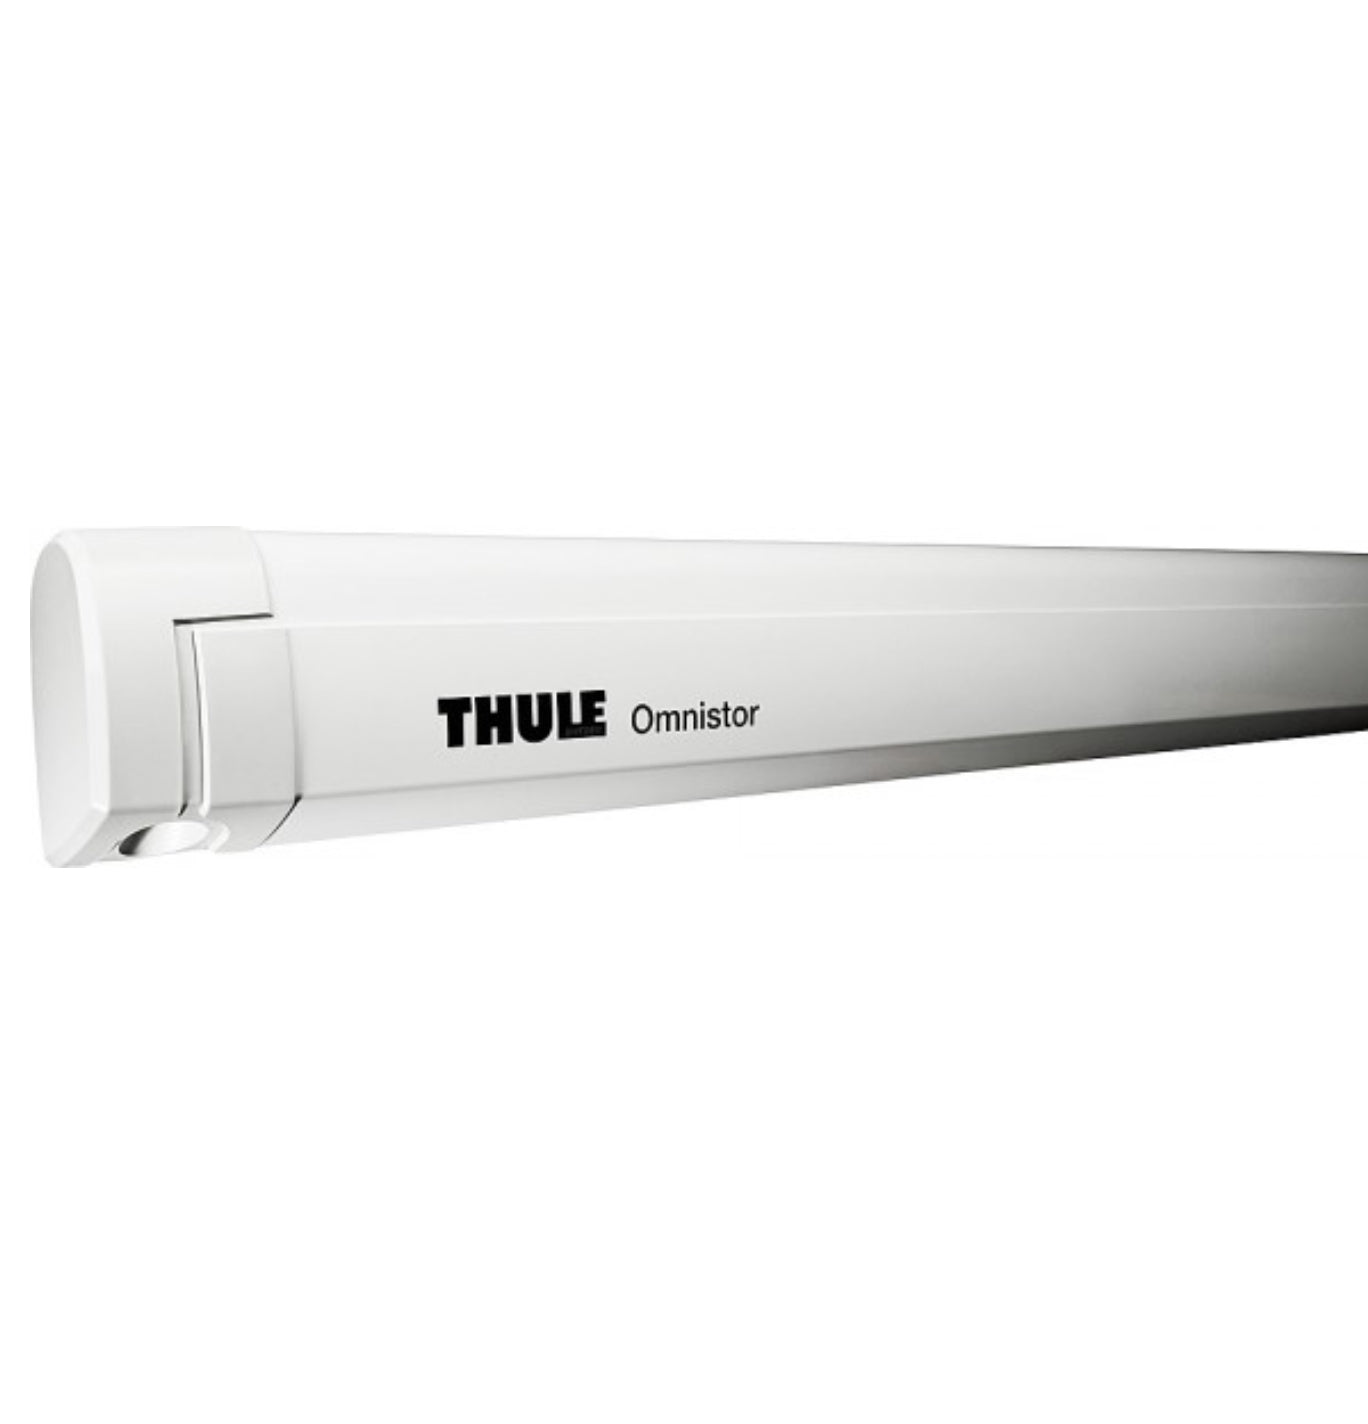 Thule Omnistor 5200 3.52m White